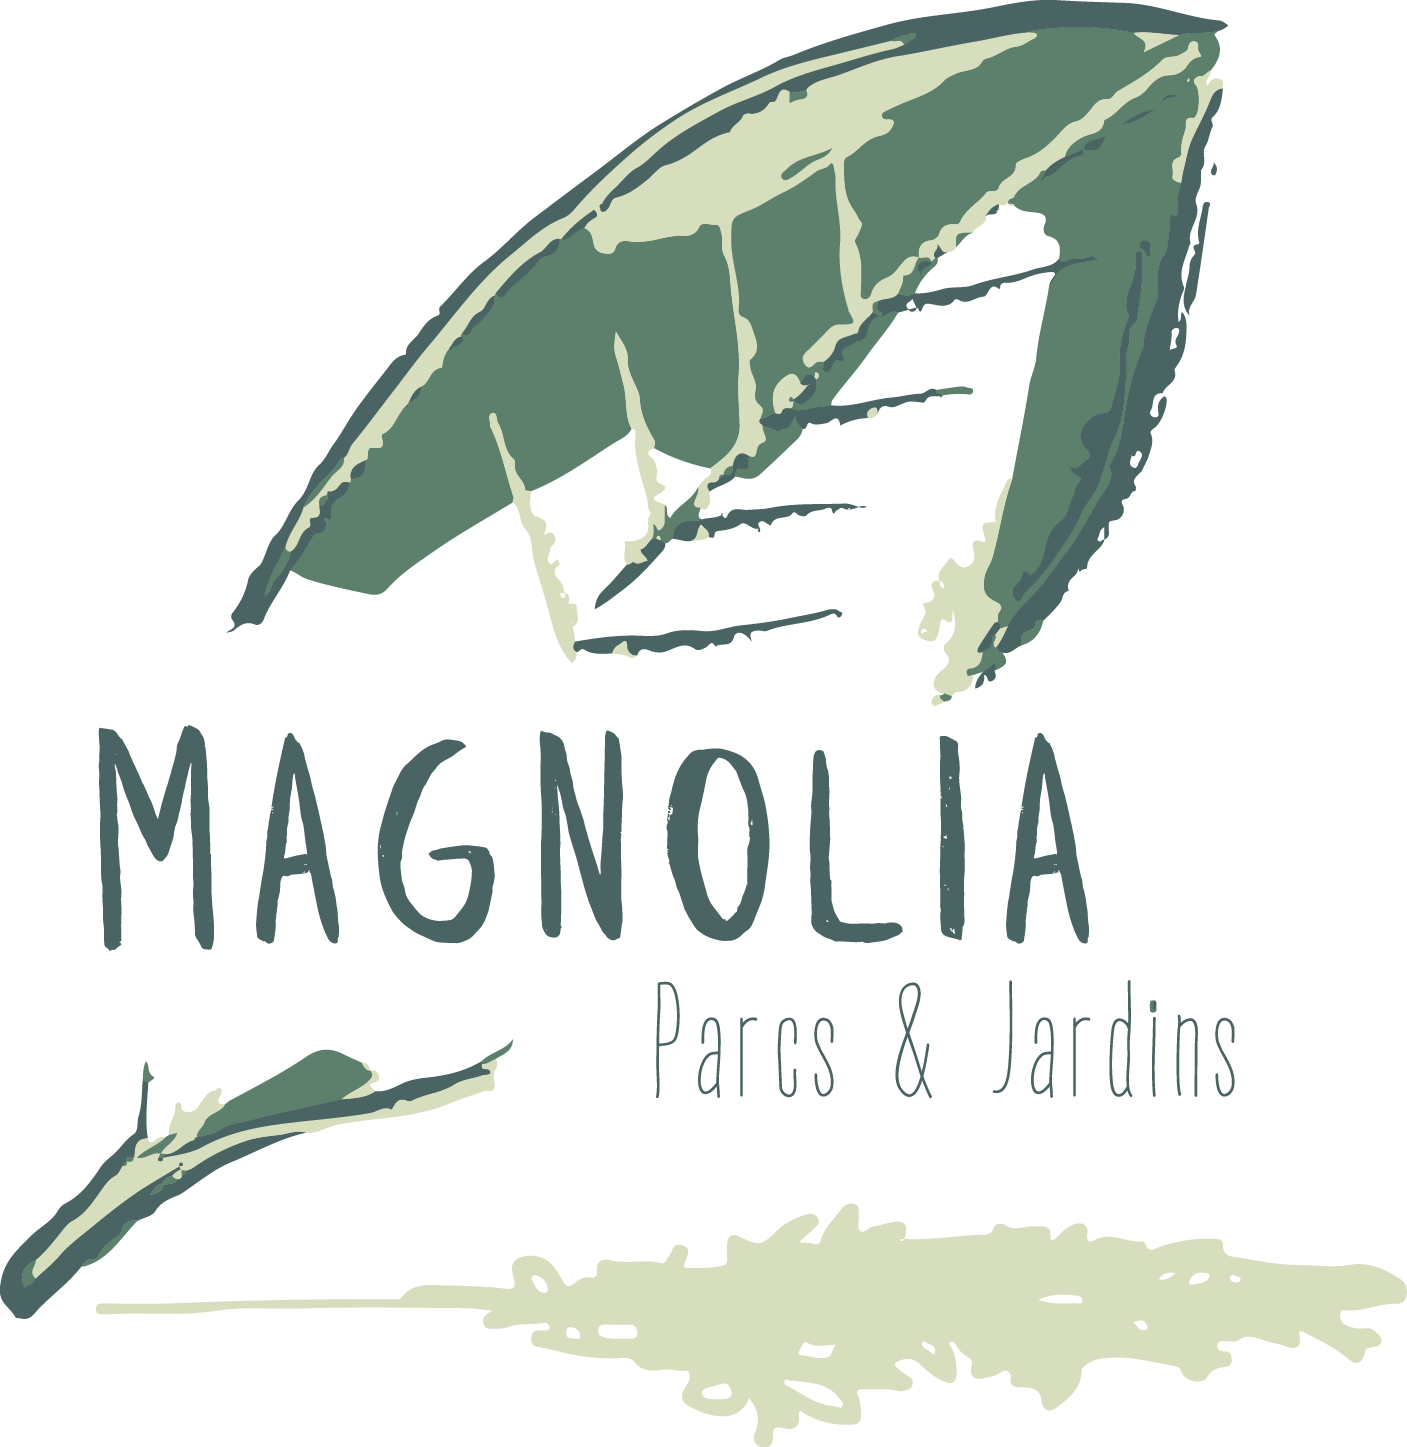 Logo MAGNOLIA